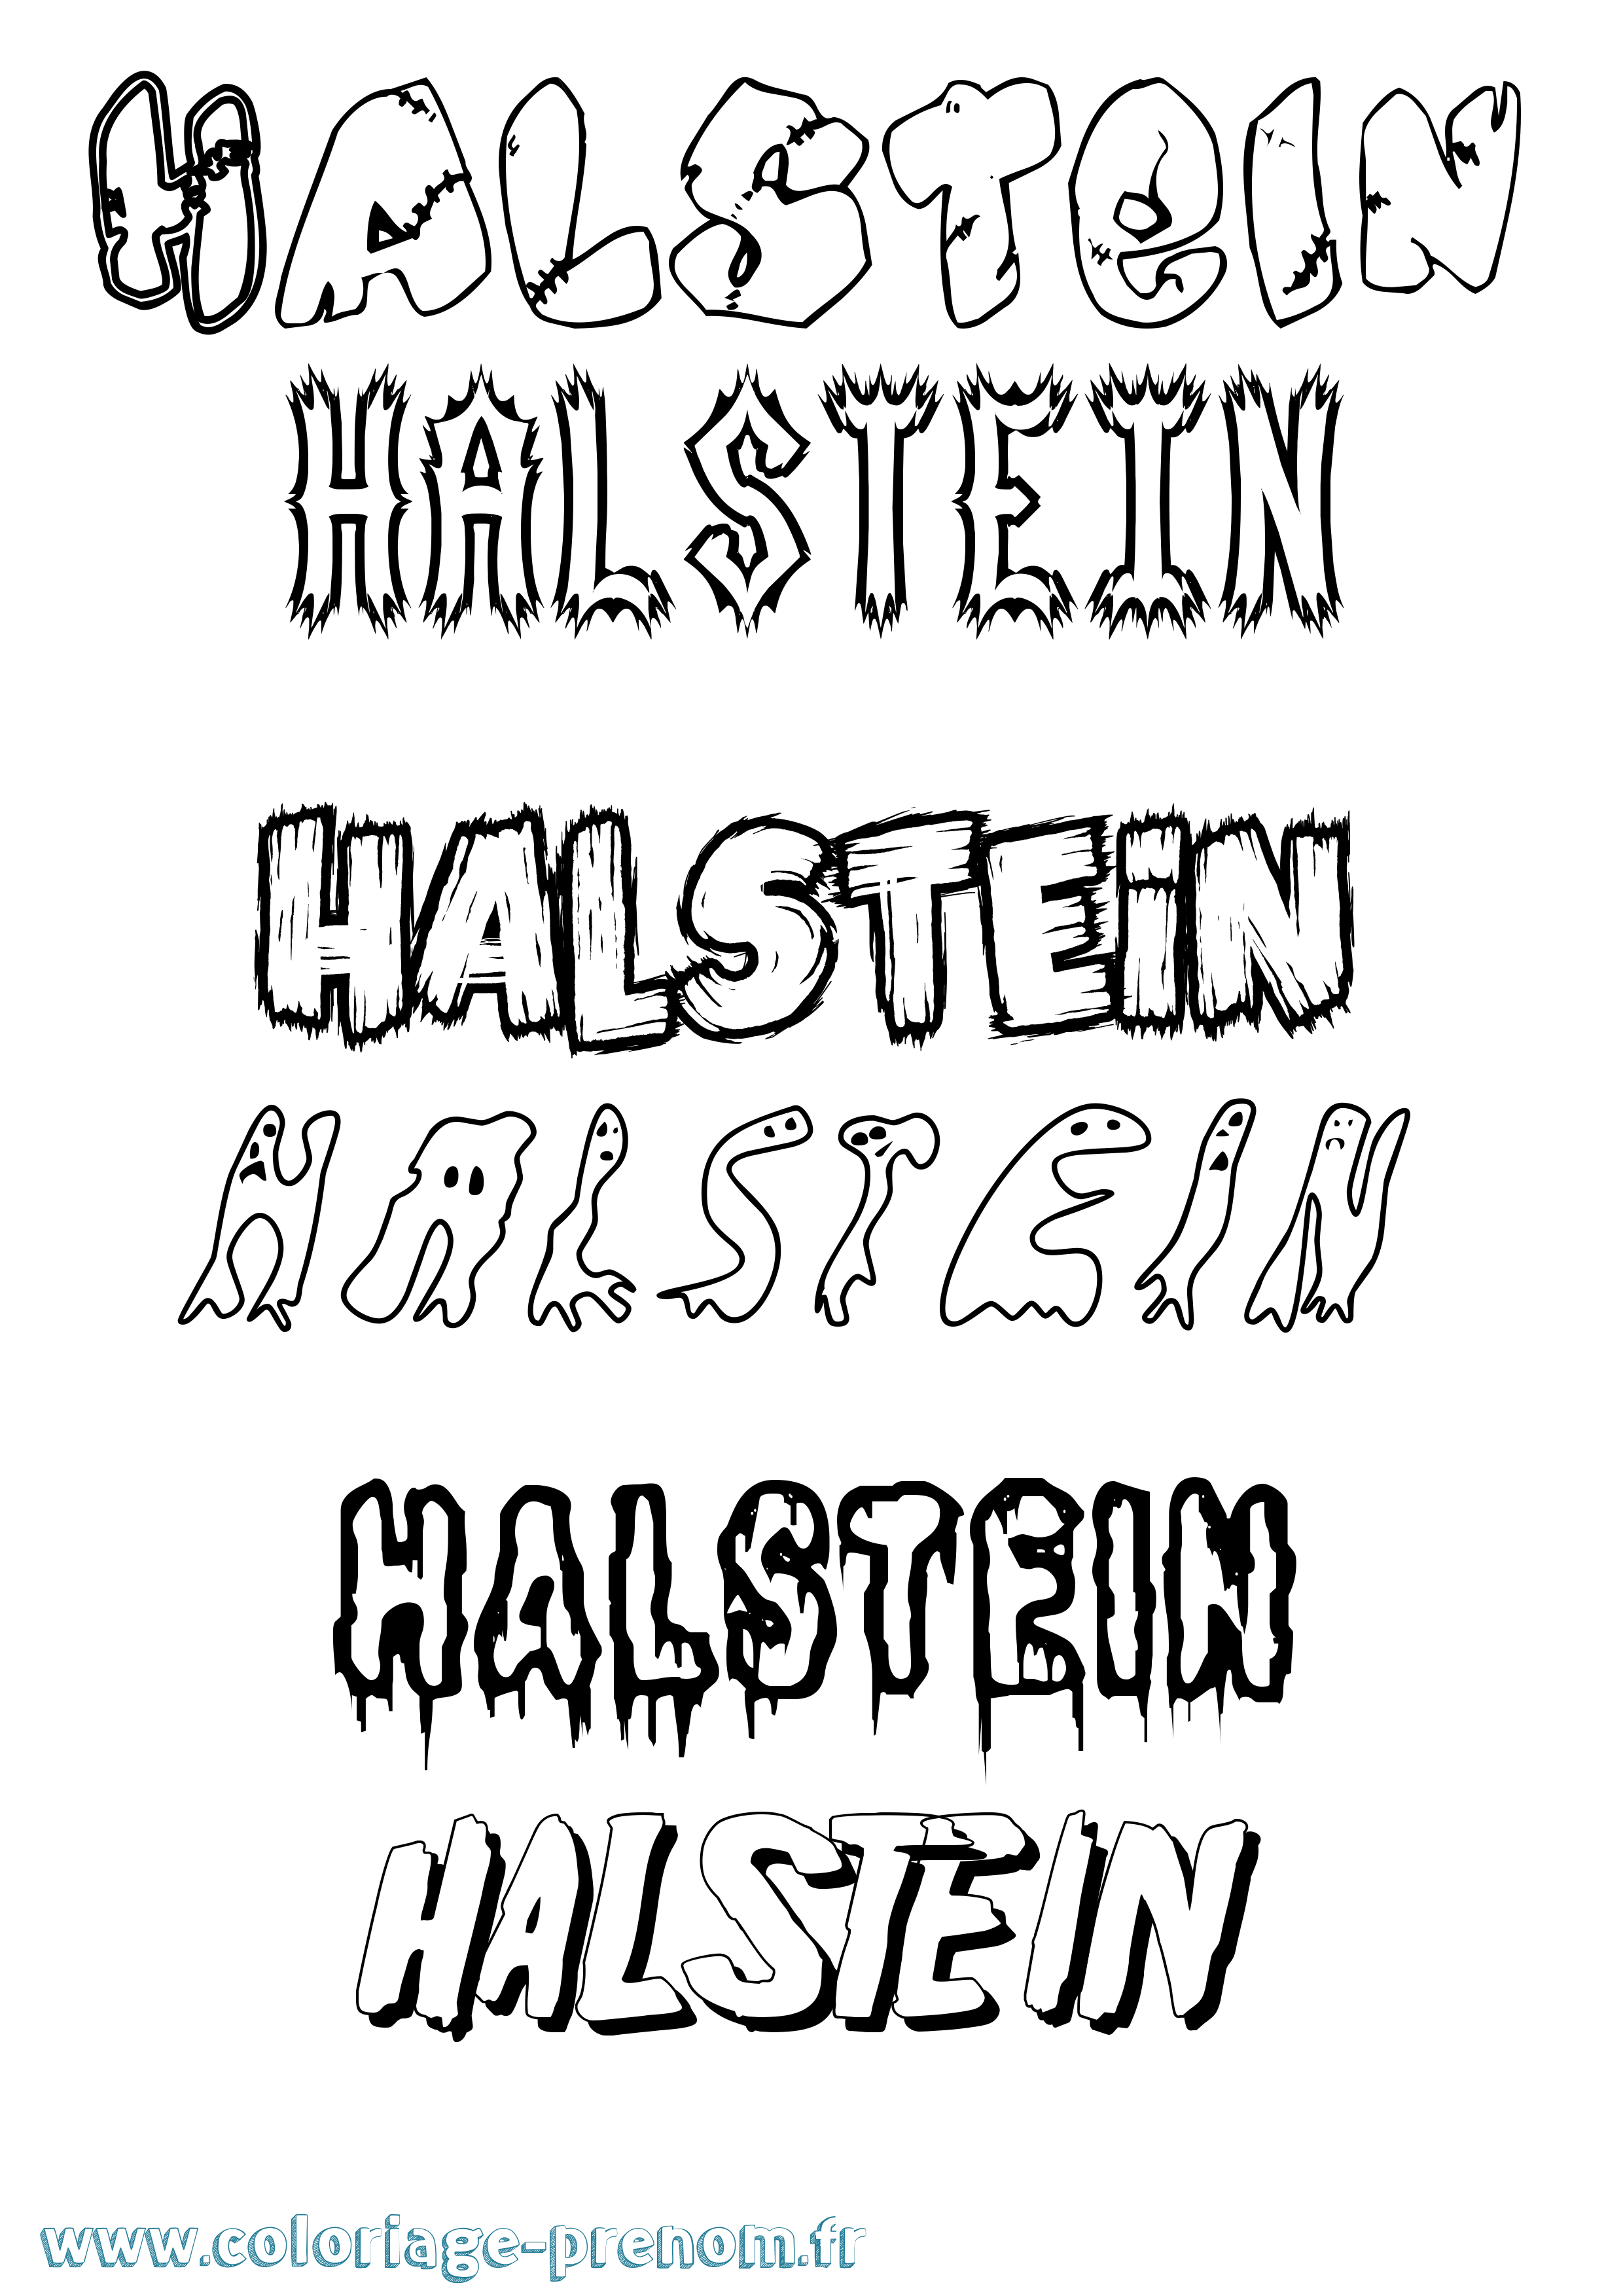 Coloriage prénom Halstein Frisson